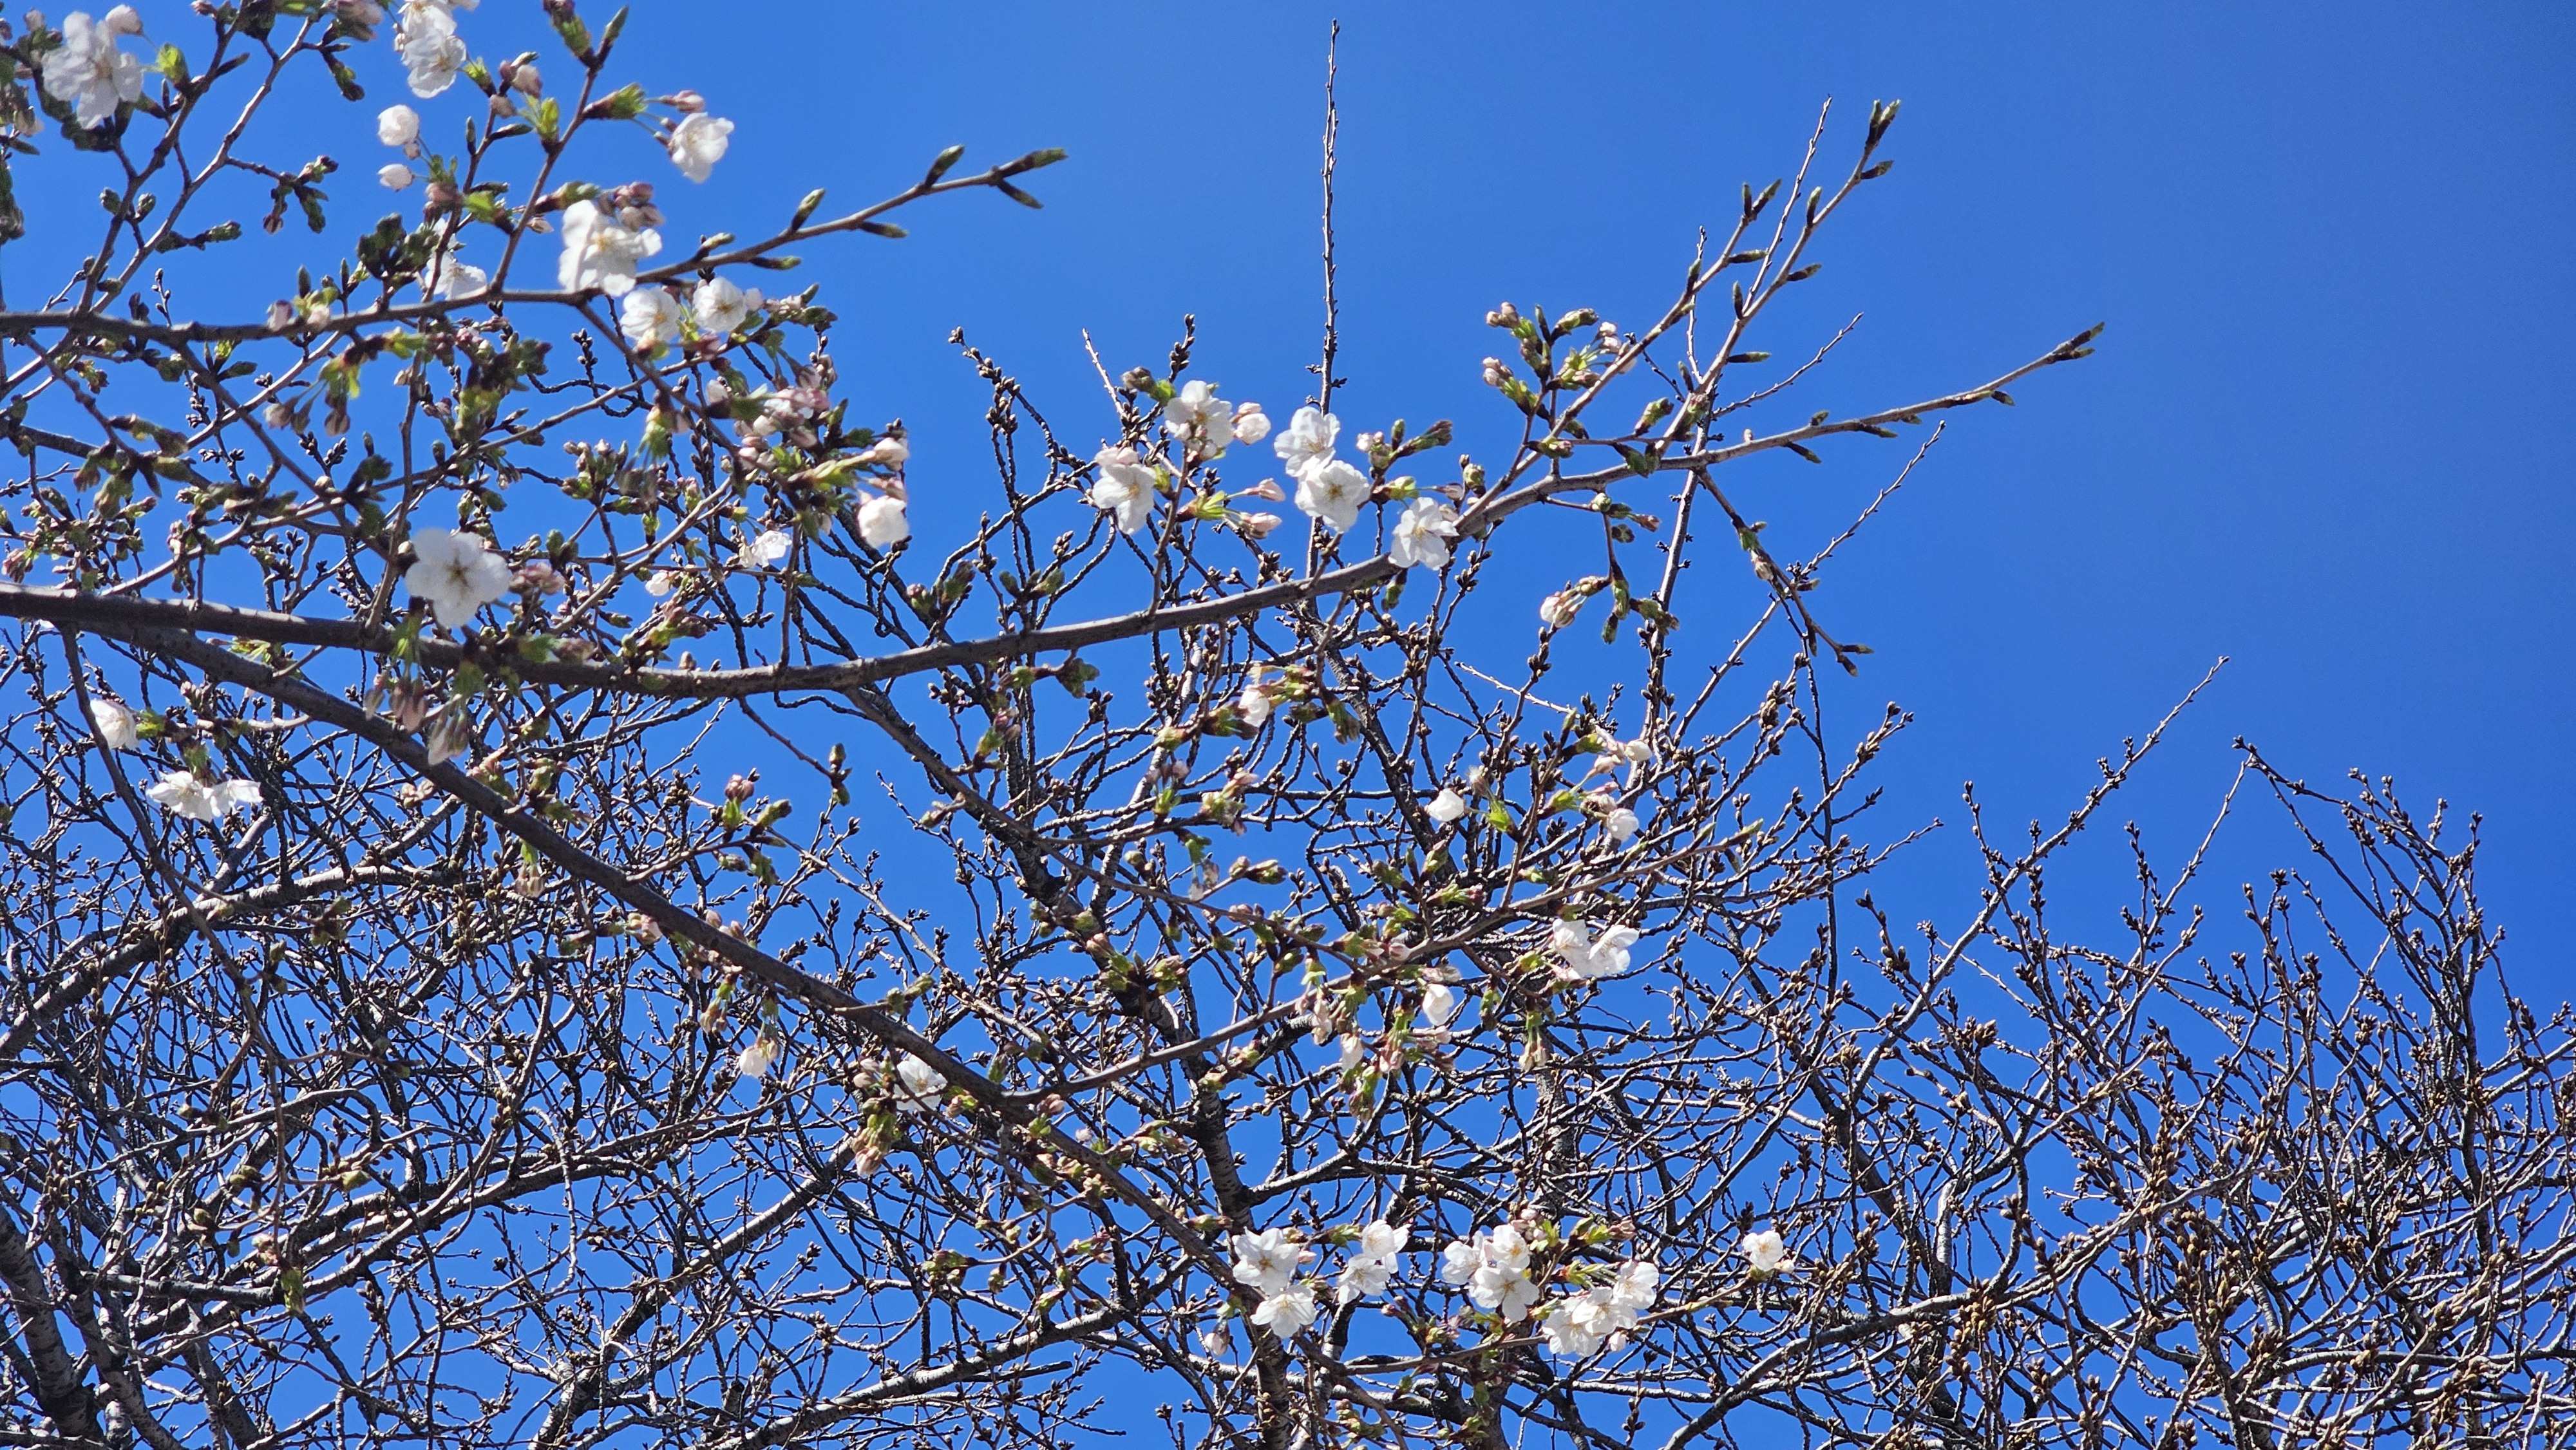 제17회 전농로 왕벚꽃 축제를 하루 앞둔 21일 오전, 왕벚나무 한 그루가 ‘나 홀로’ 꽃망울을 터뜨리고 있다.